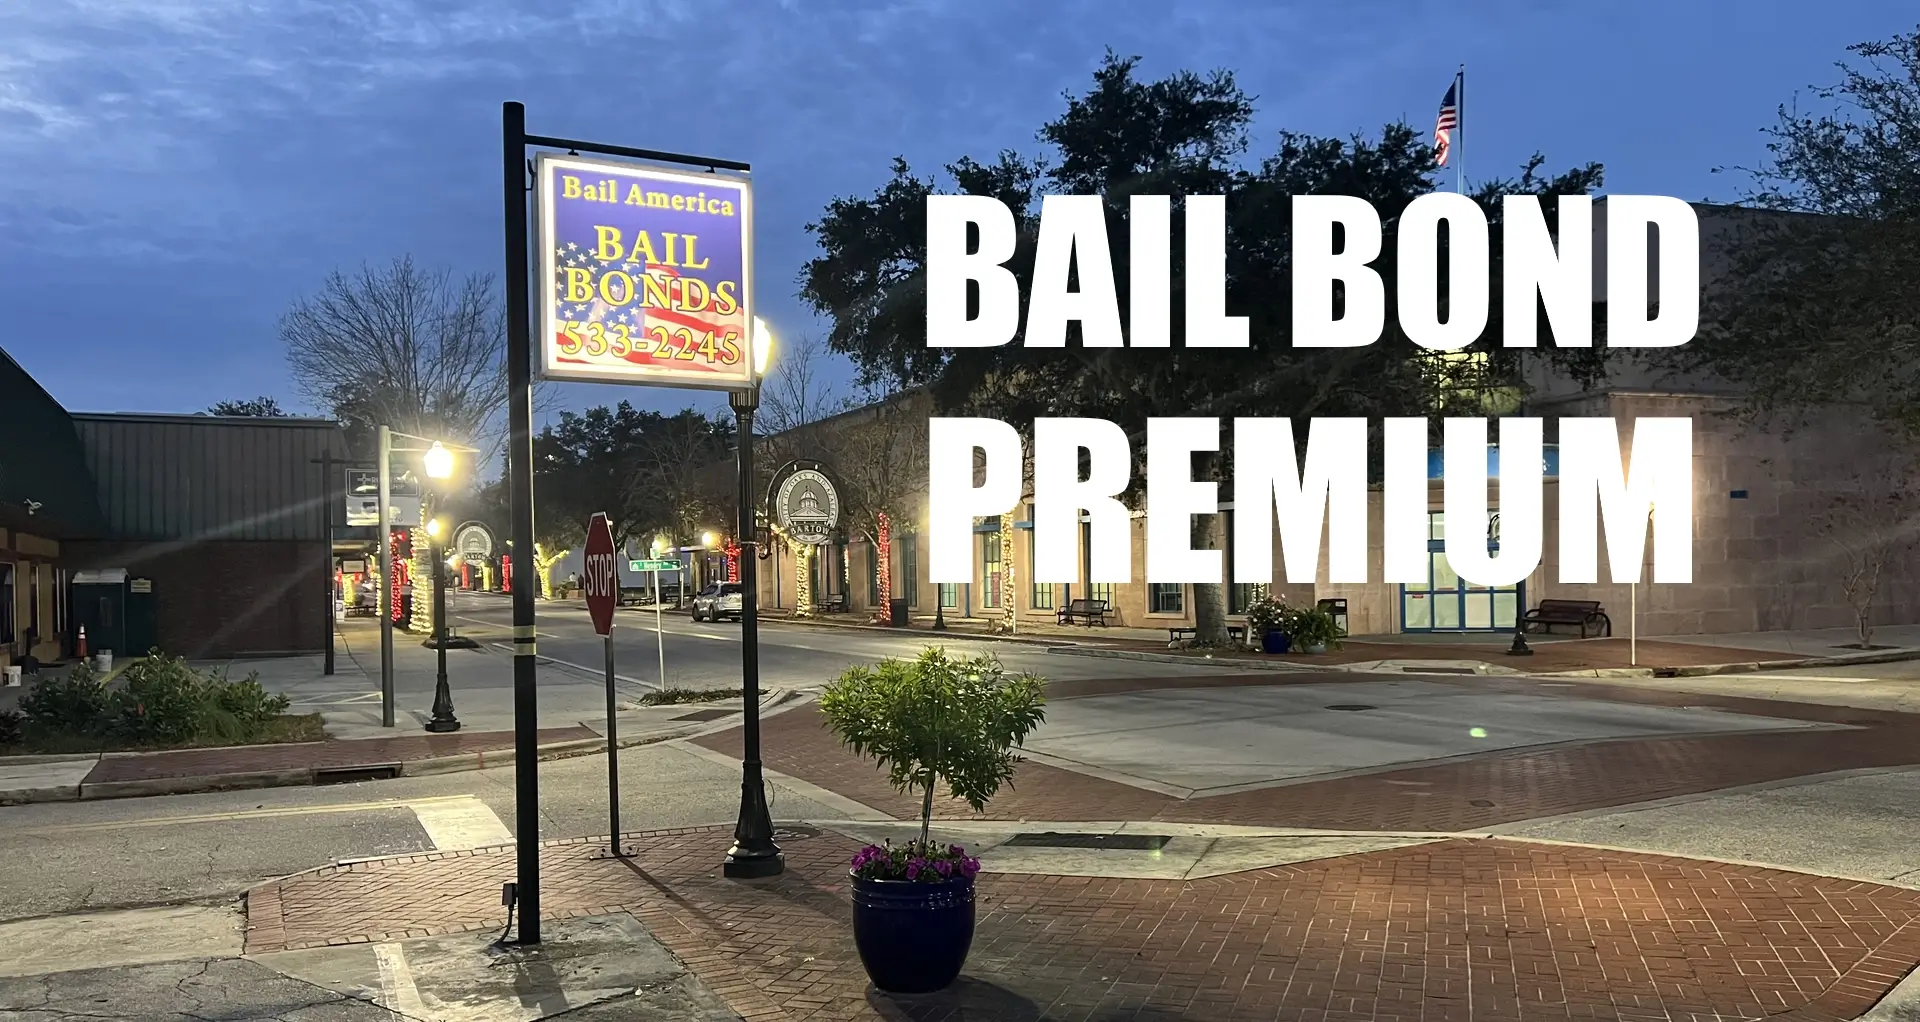 Bail Bond Premium costs in Florida